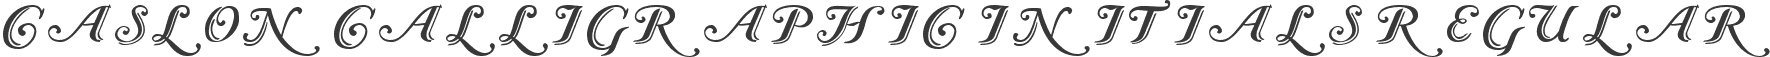 Caslon Calligraphic Initials Regular